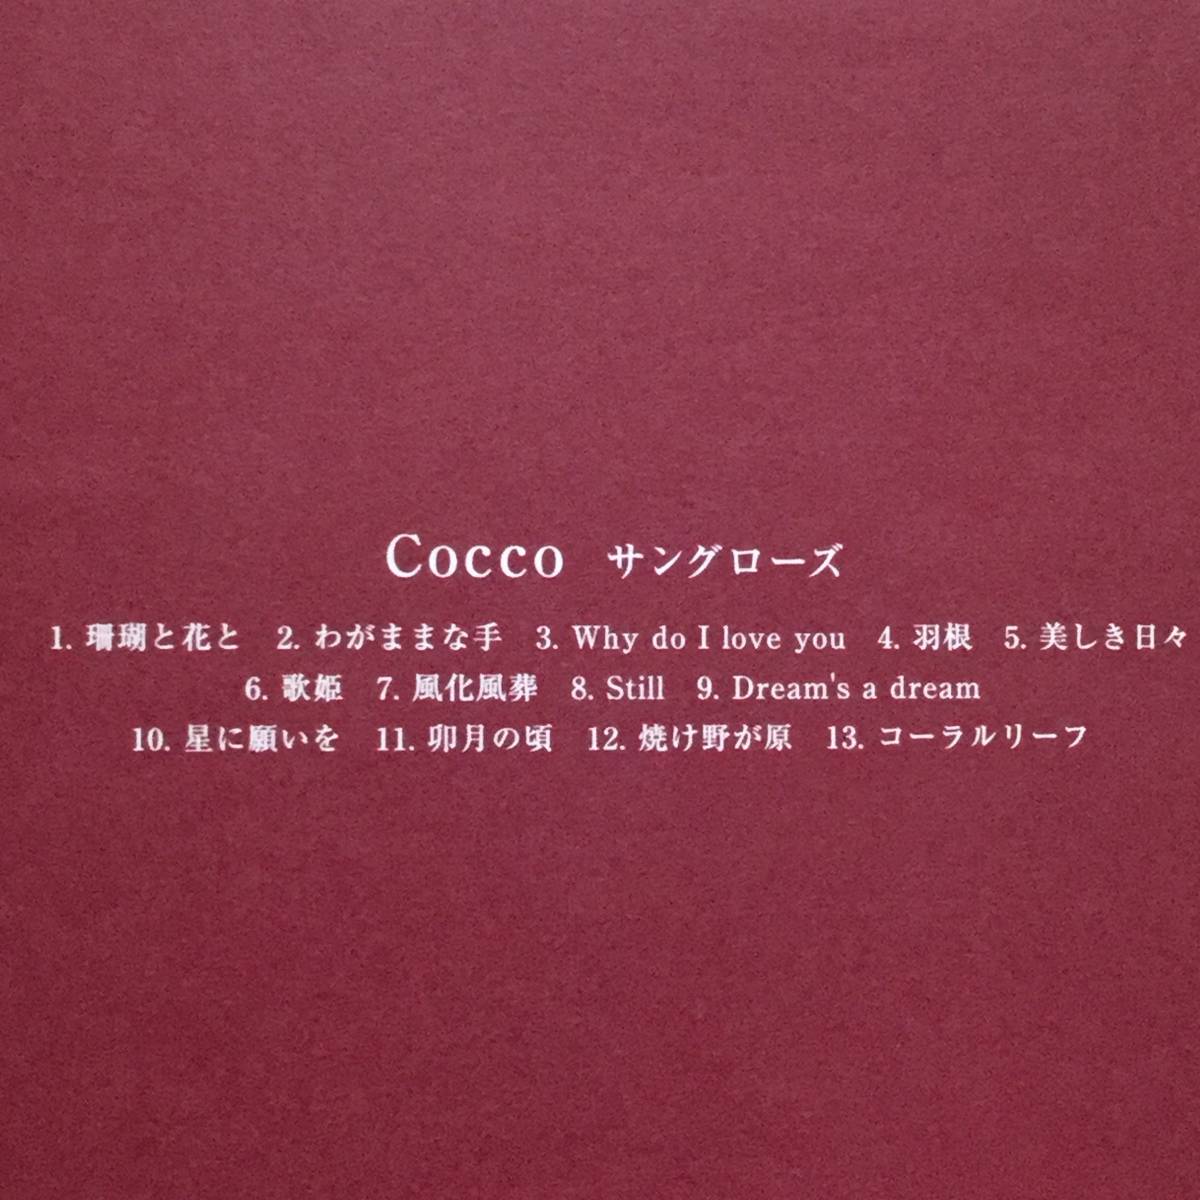 【中古】セル版 CD ◆ COCCO《 サングローズ 》◆ 4th アルバム《 2001/04/18 》こっこ_画像3